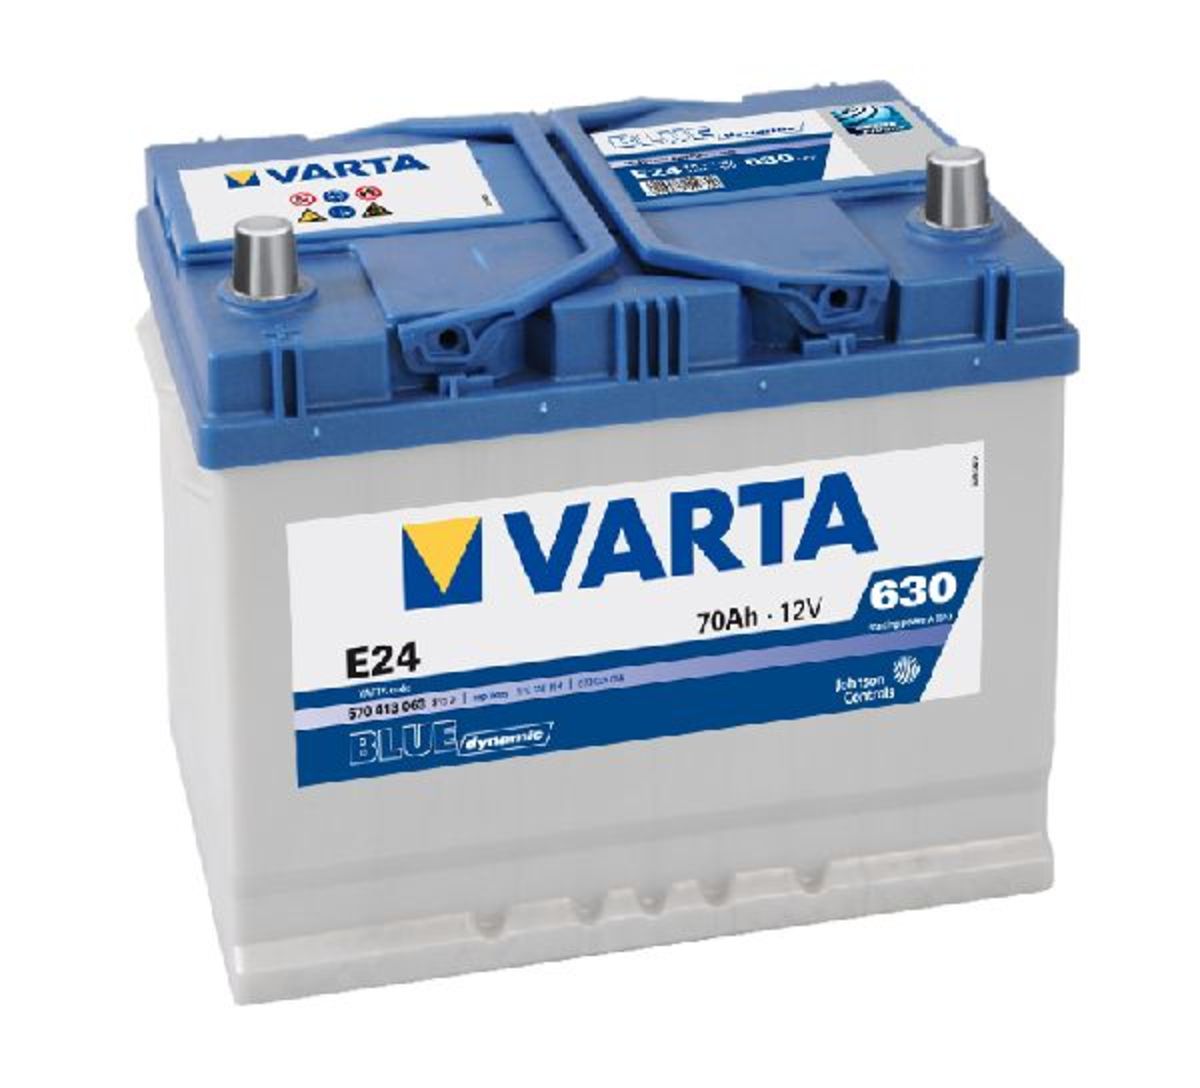 5704130633132 VARTA E24 BLUE dynamic E24 Batterie 12V 70Ah 630A B01  Batterie au plomb